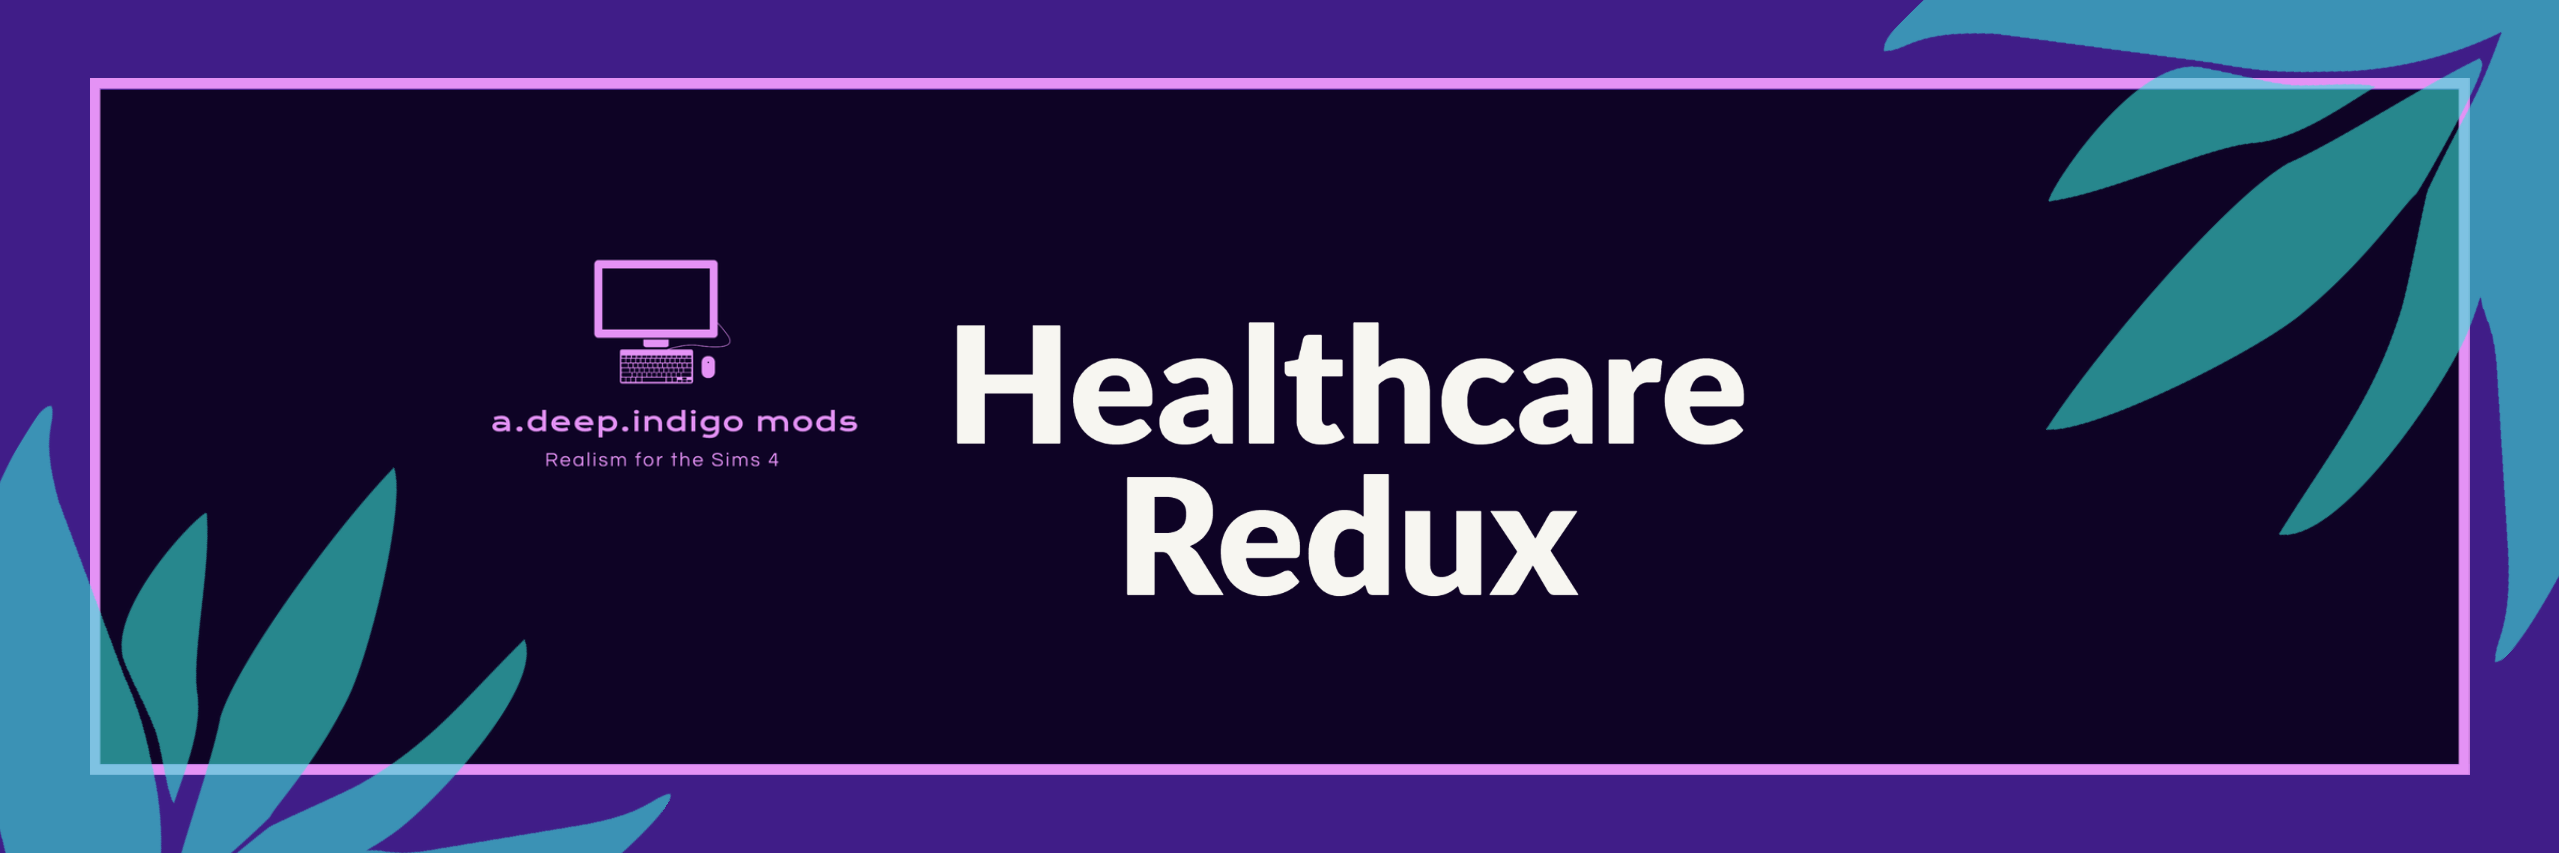 Healthcare Redux